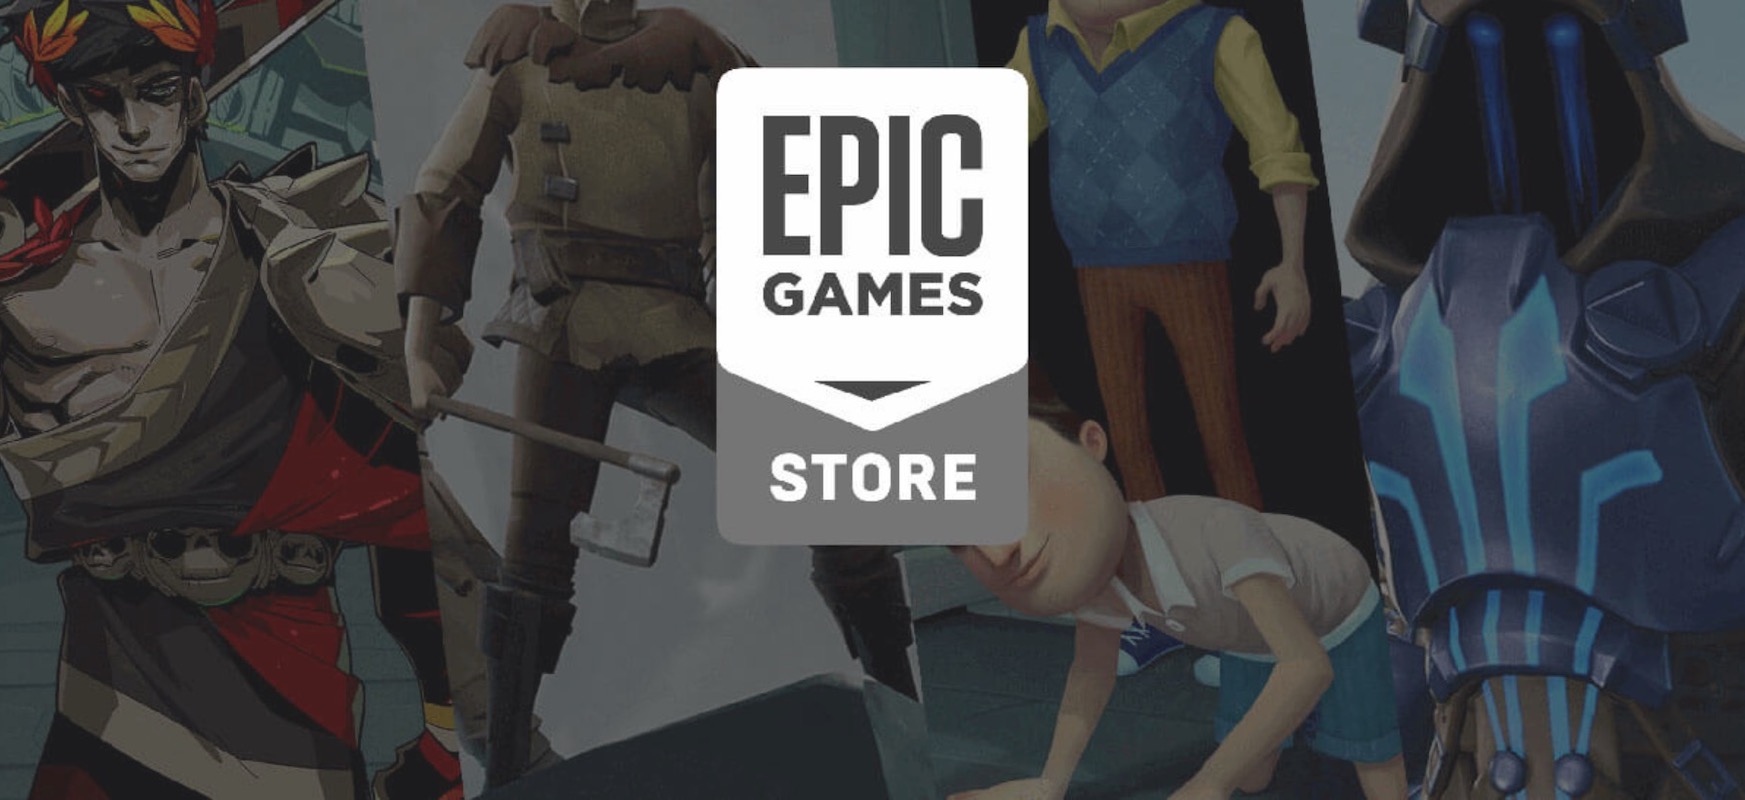 Epic Games Store-k Steam lotsatzen du. Sustapenaren aurretik erositako jokoetarako dirua itzultzen du